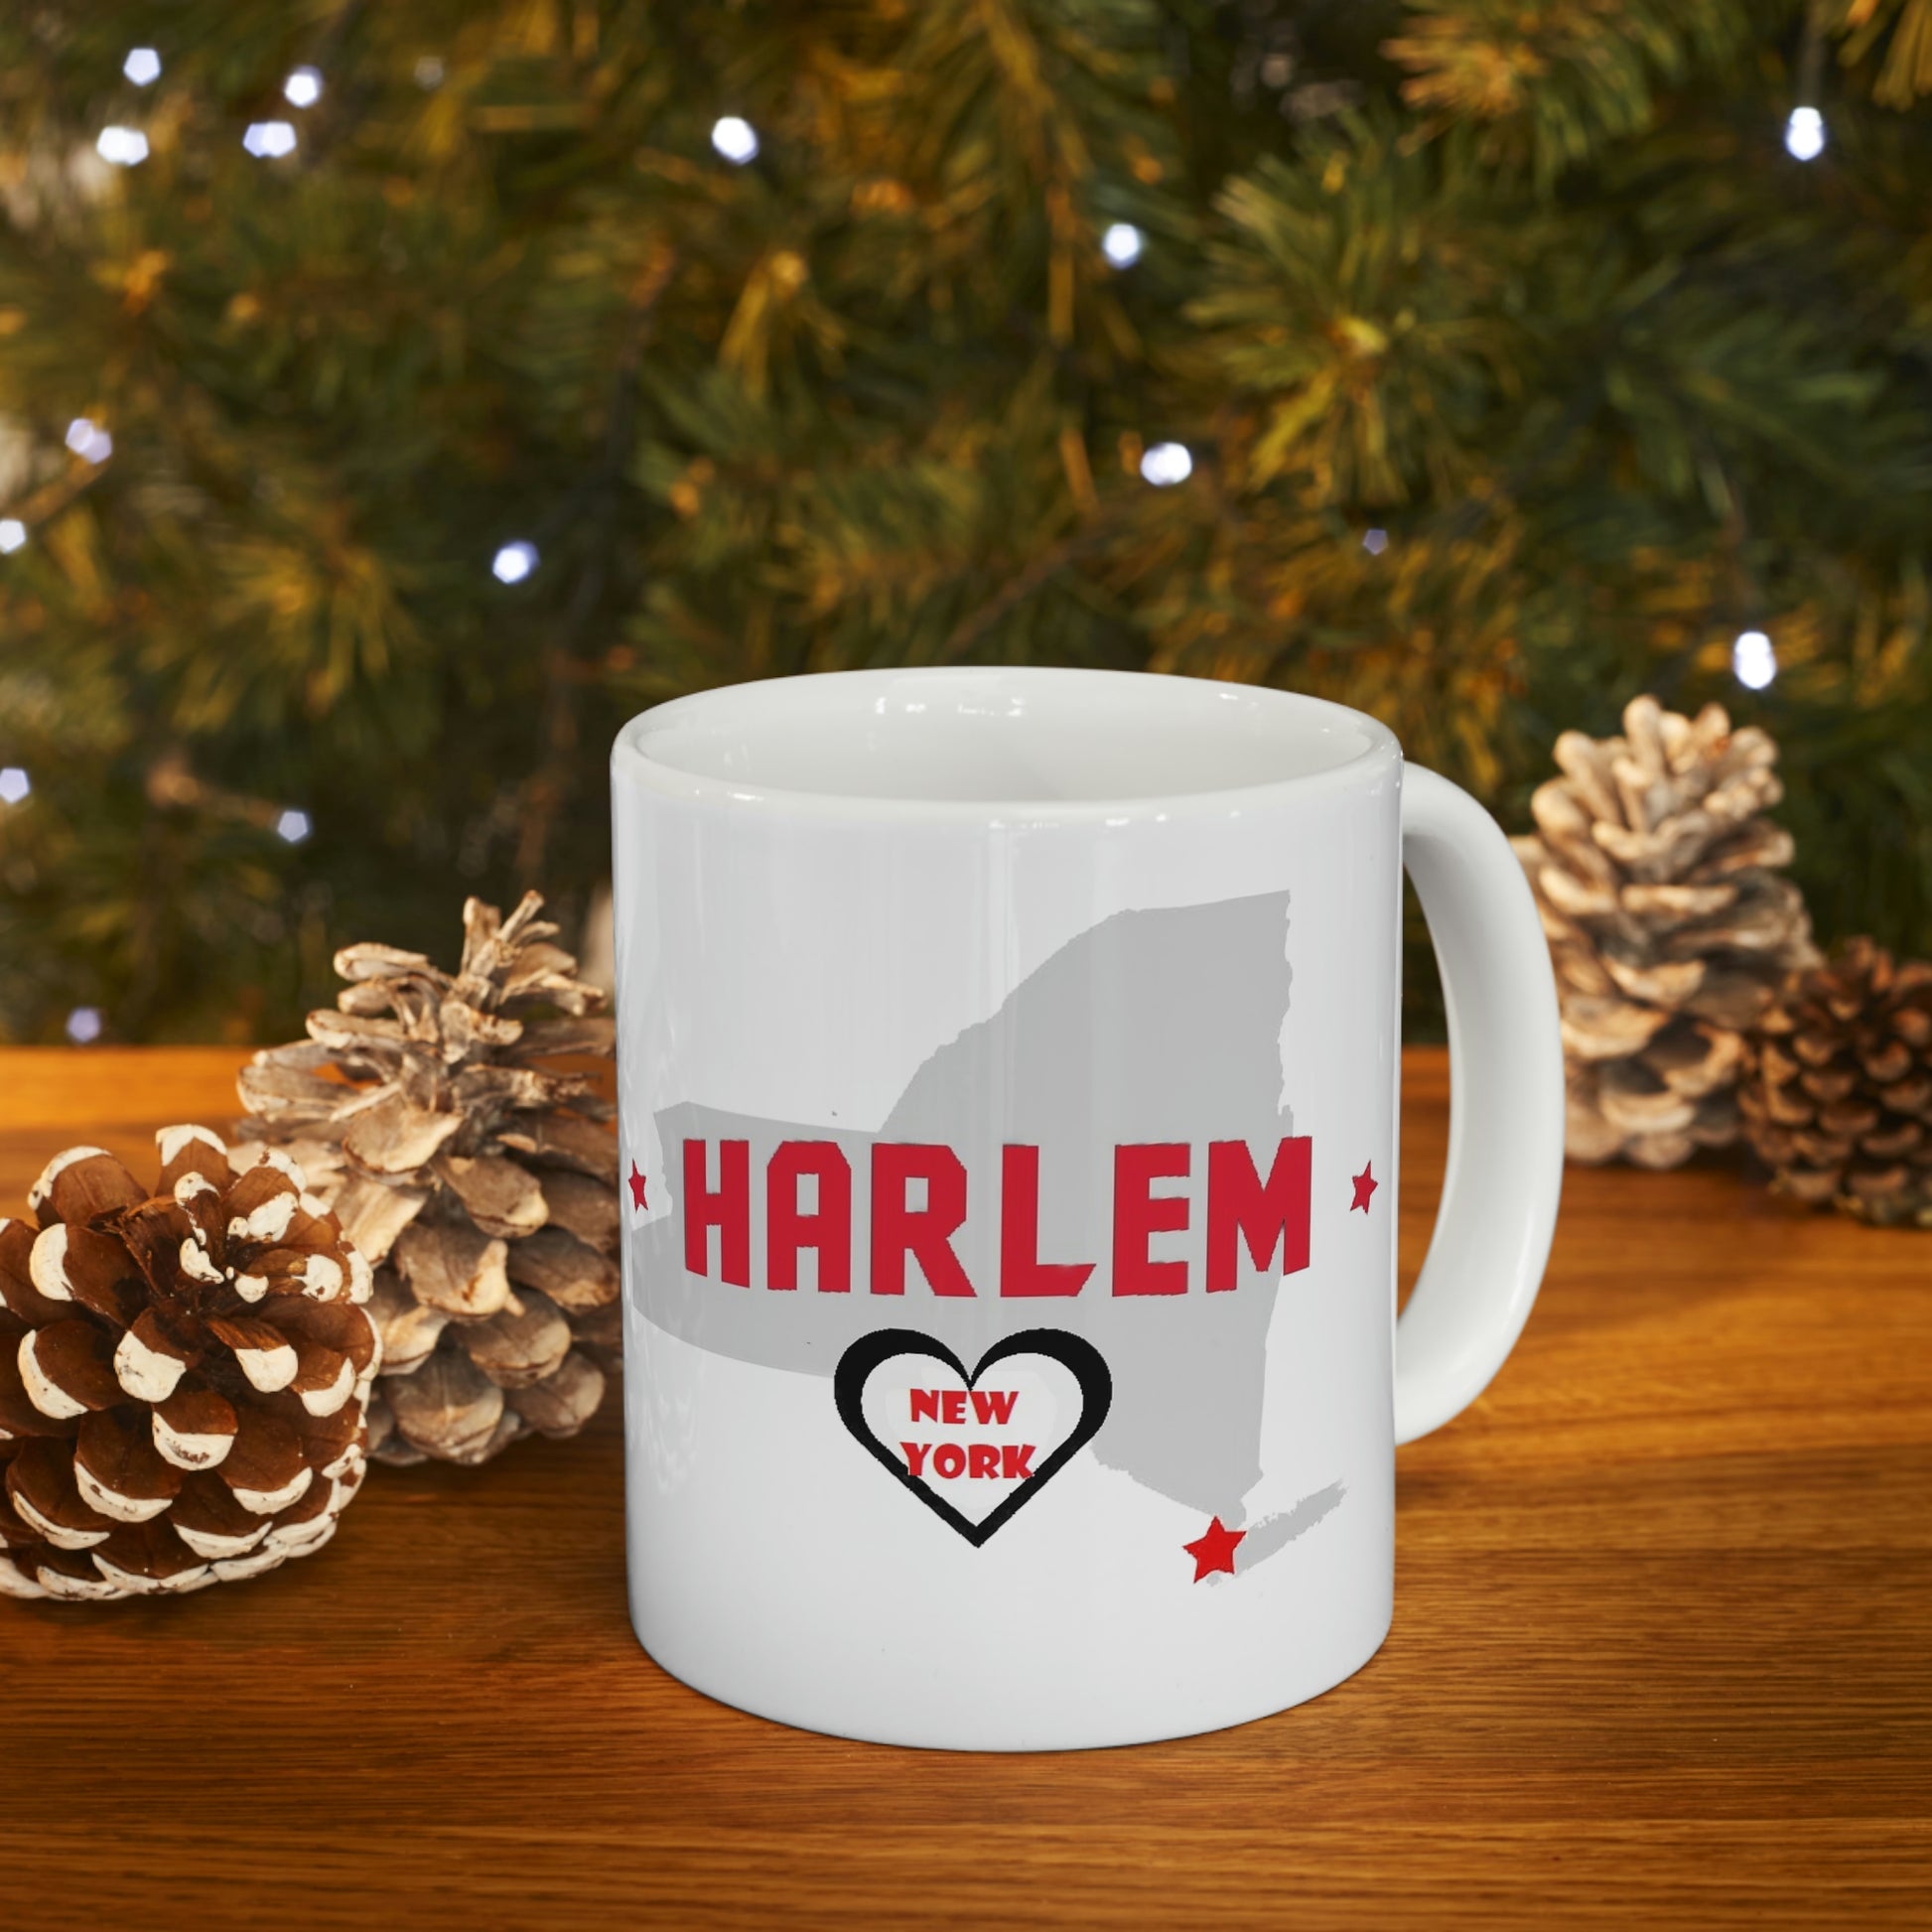 Harlem New York State Map Ceramic Mug By Christmas Tree